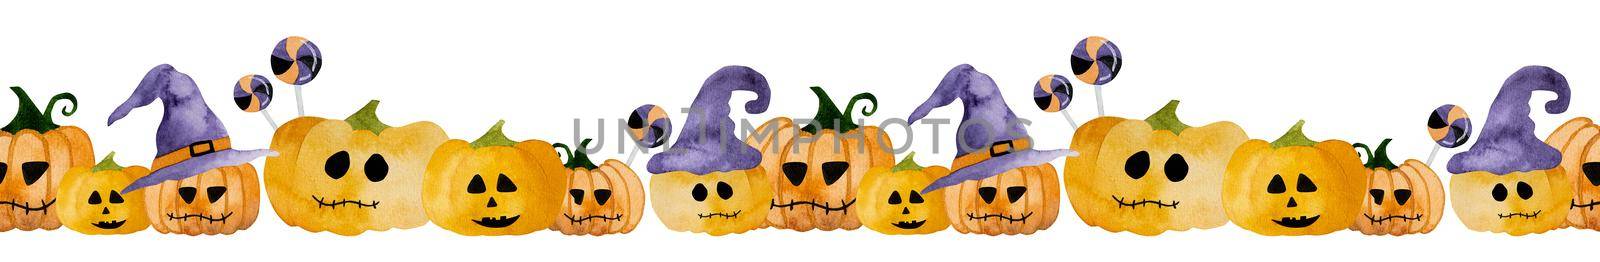 Halloween watercolor pumpkin by tan4ikk1